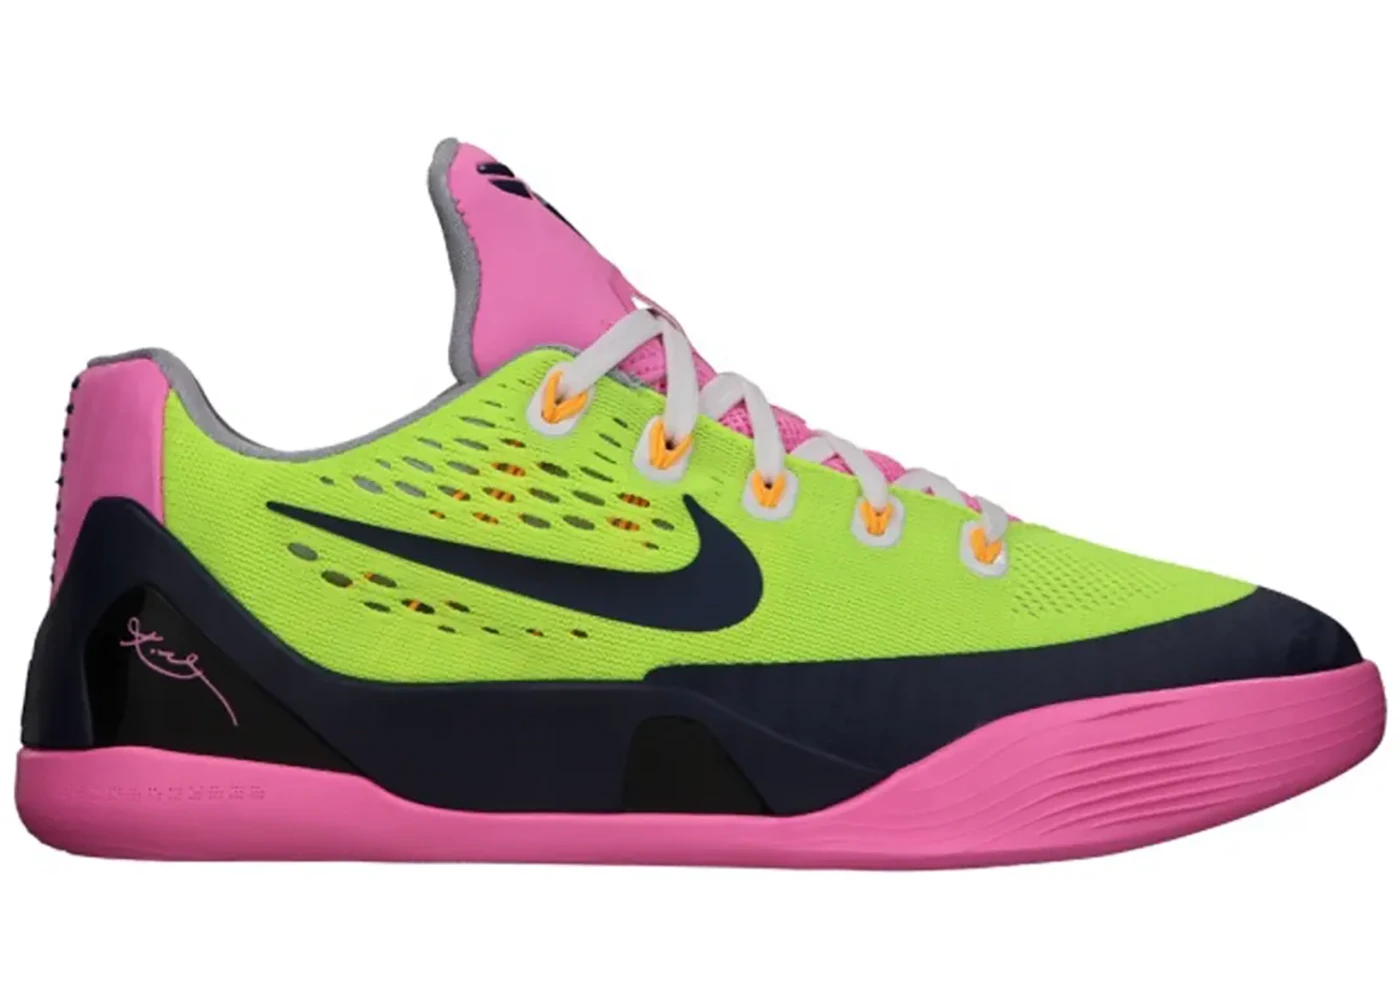 Nike pink kobes shoes Kobe 9 EM Volt Navy Pink (GS) - 653593-701 - US